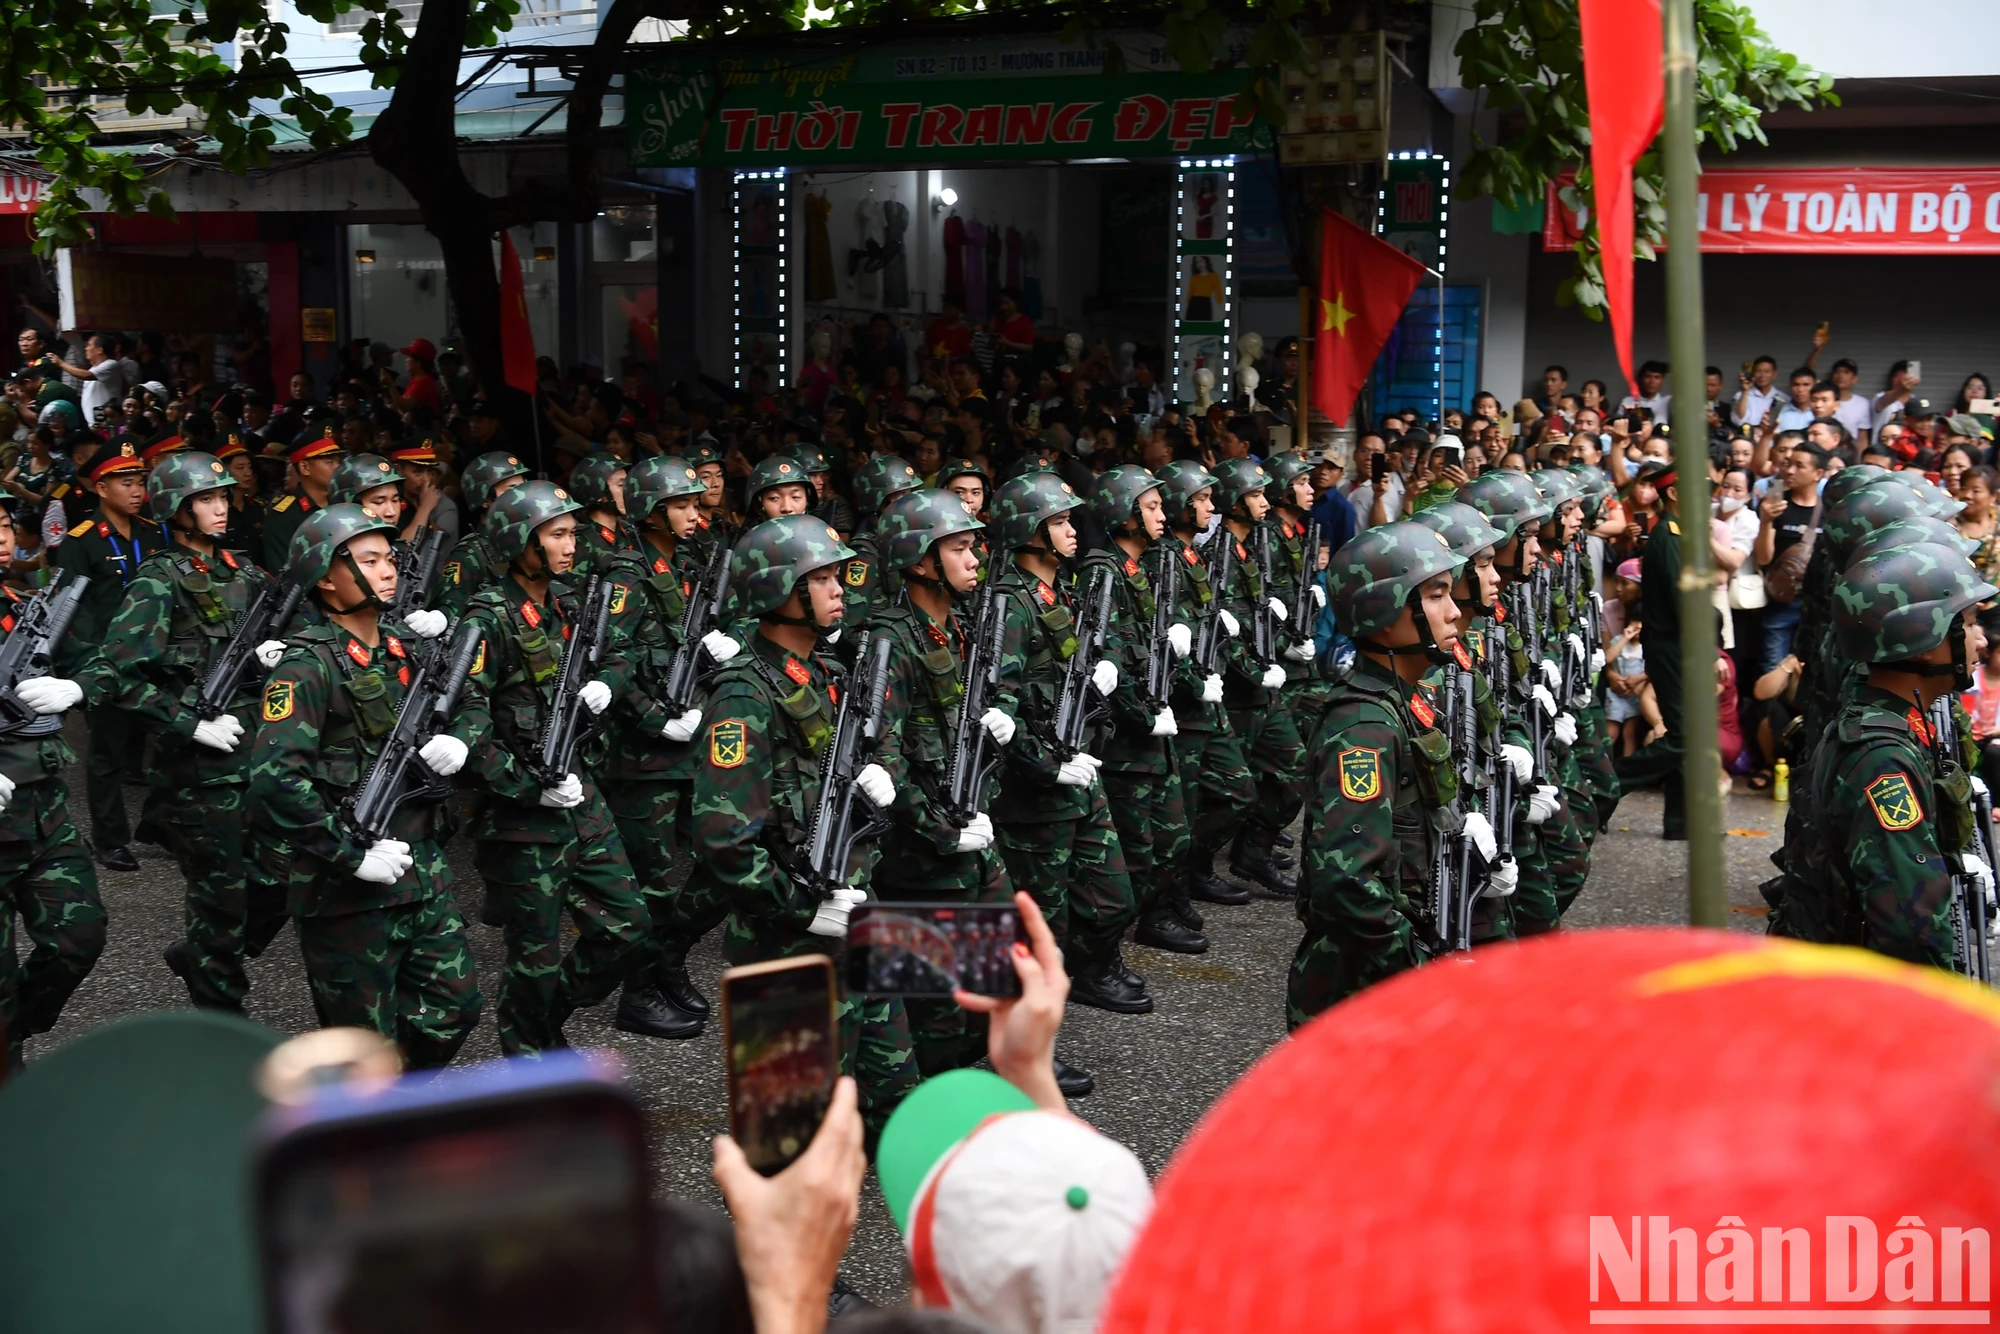 Các khối diễu binh, diễu hành đã tạo nên một không khí đặc biệt cho thành phố Điện Biên Phủ trong ngày kỷ niệm 70 năm Chiến thắng Điện Biên Phủ.

